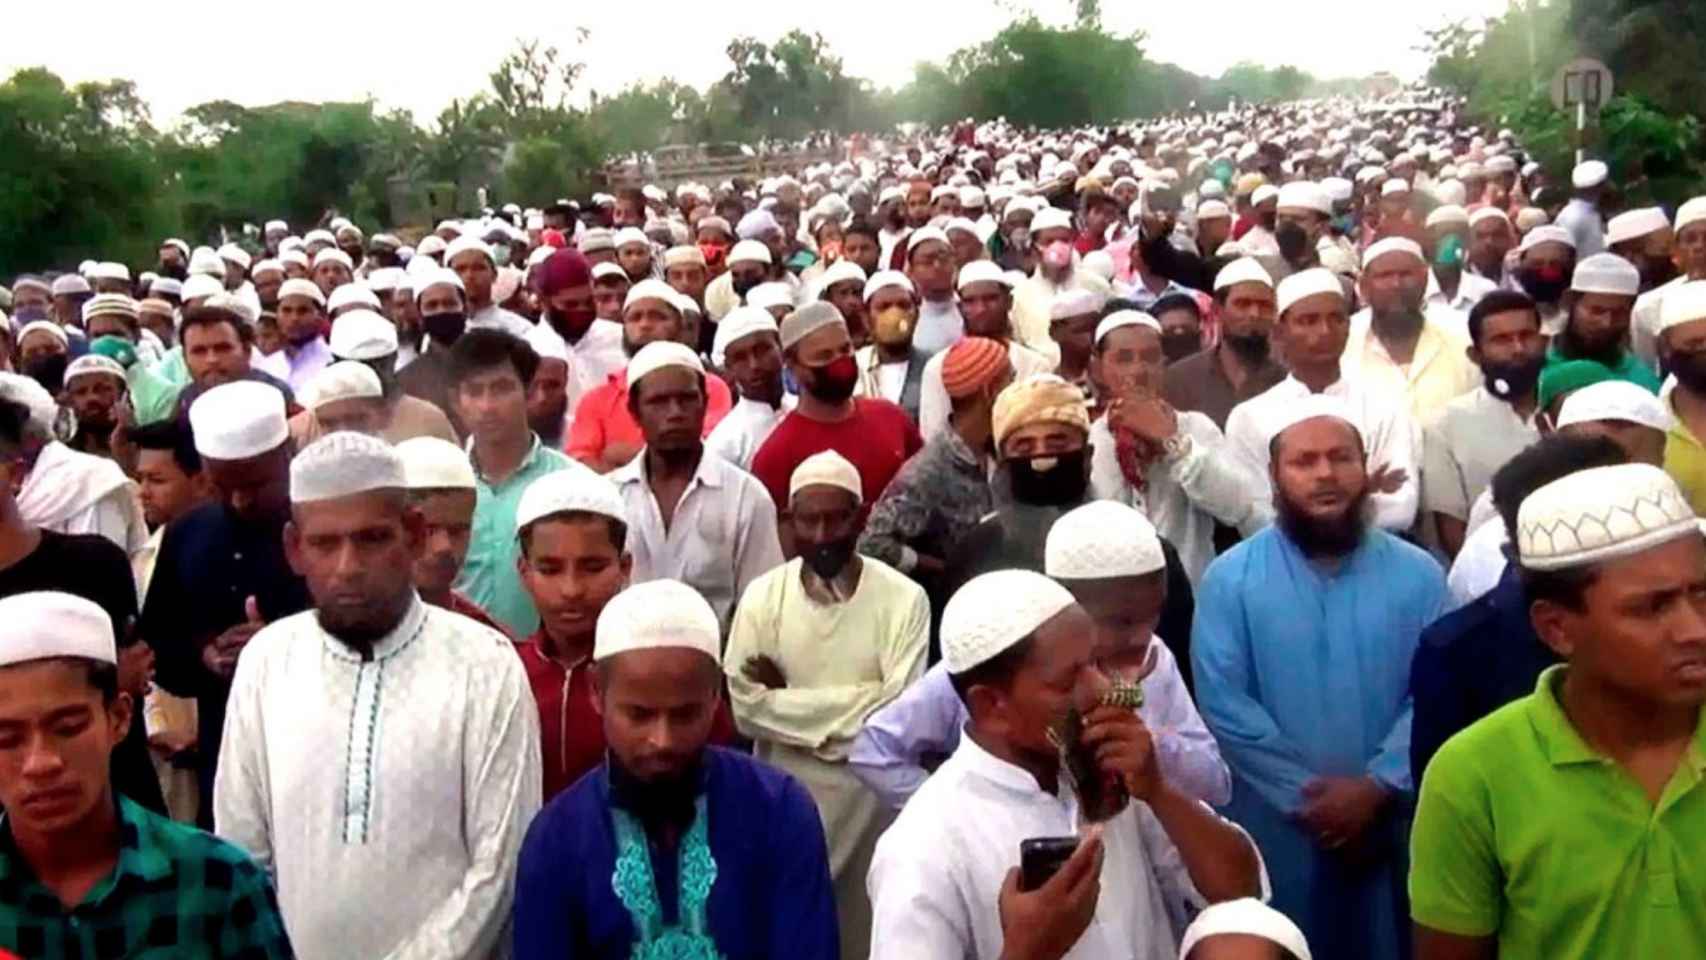 10.000 personas burlan el confinamiento en el funeral de Khelafat Majlish en Bangladesh.